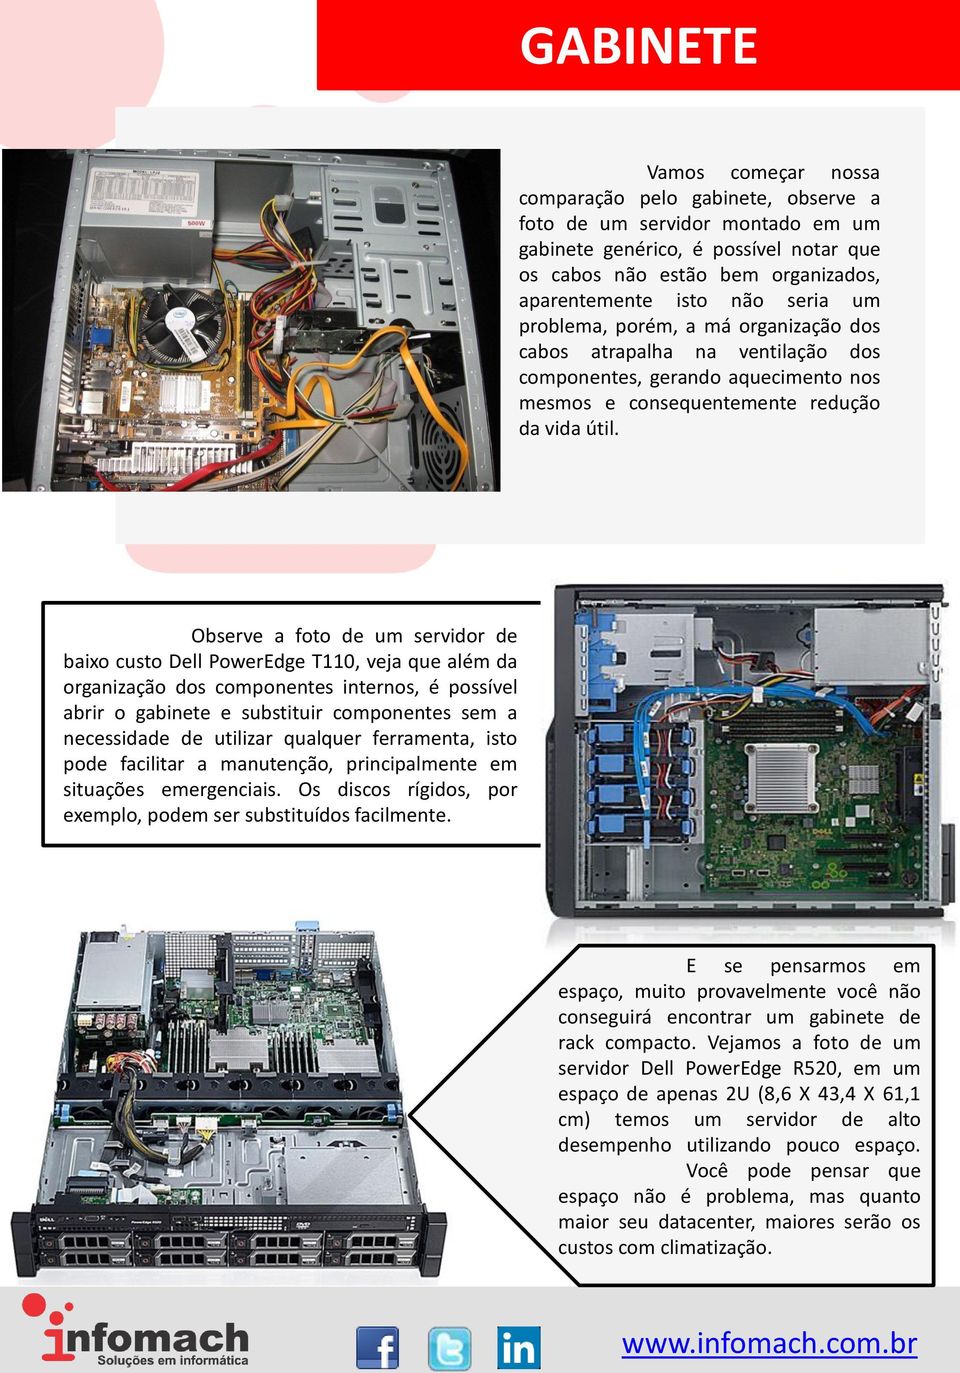 Observe a foto de um servidor de baixo custo Dell PowerEdge T110, veja que além da organização dos componentes internos, é possível abrir o gabinete e substituir componentes sem a necessidade de